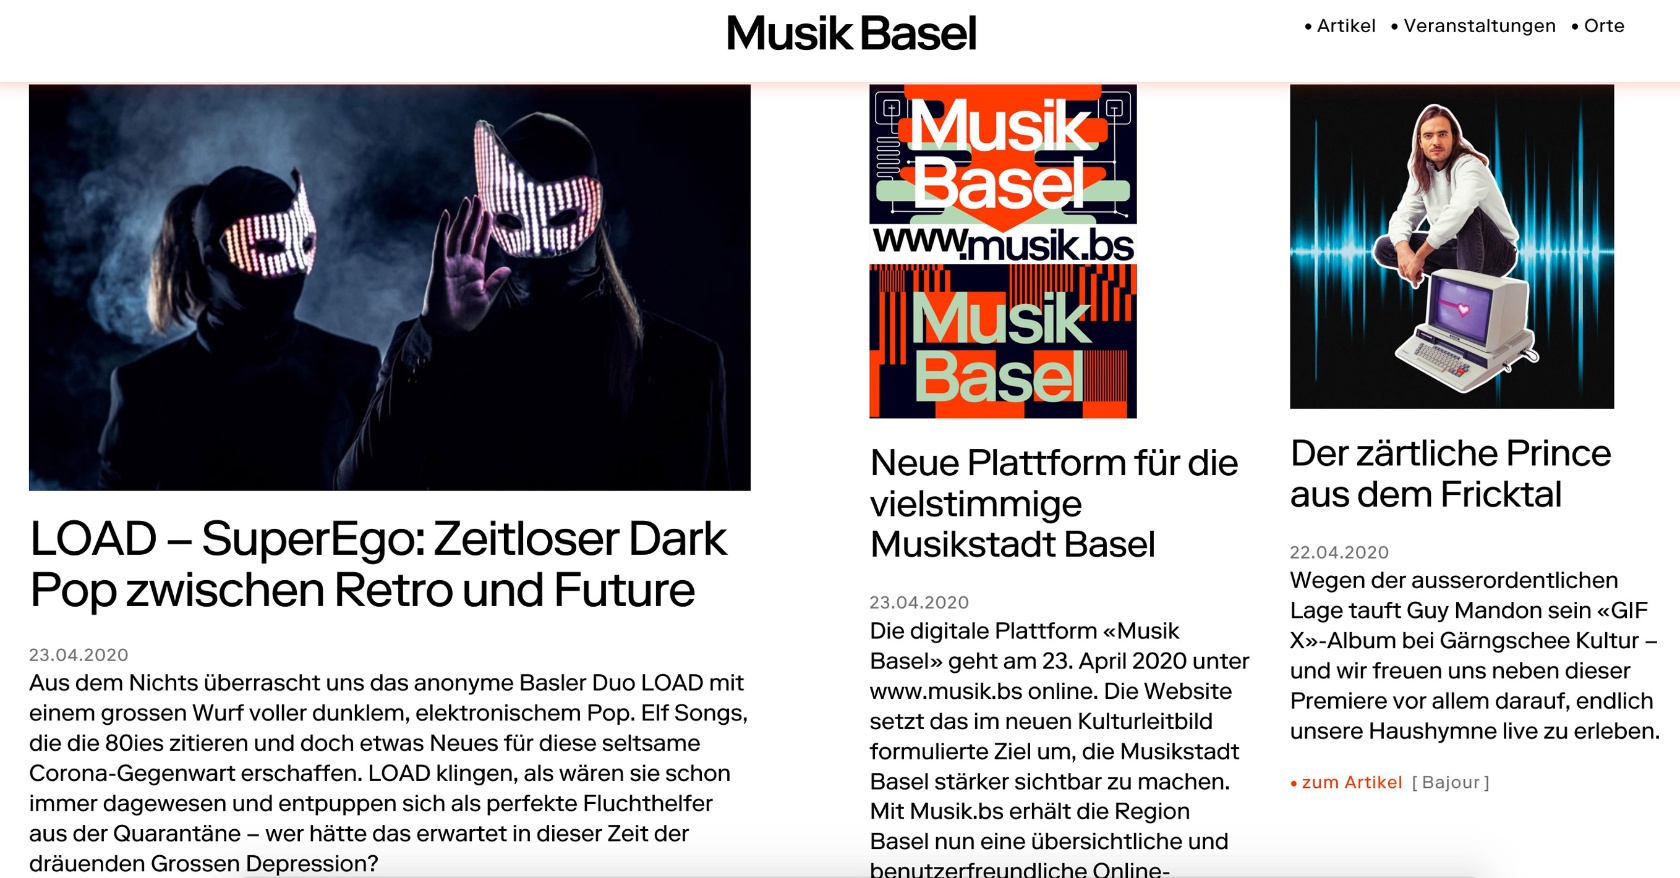 Musik Basel ist online: Startseite von www.musik.bs © 2020